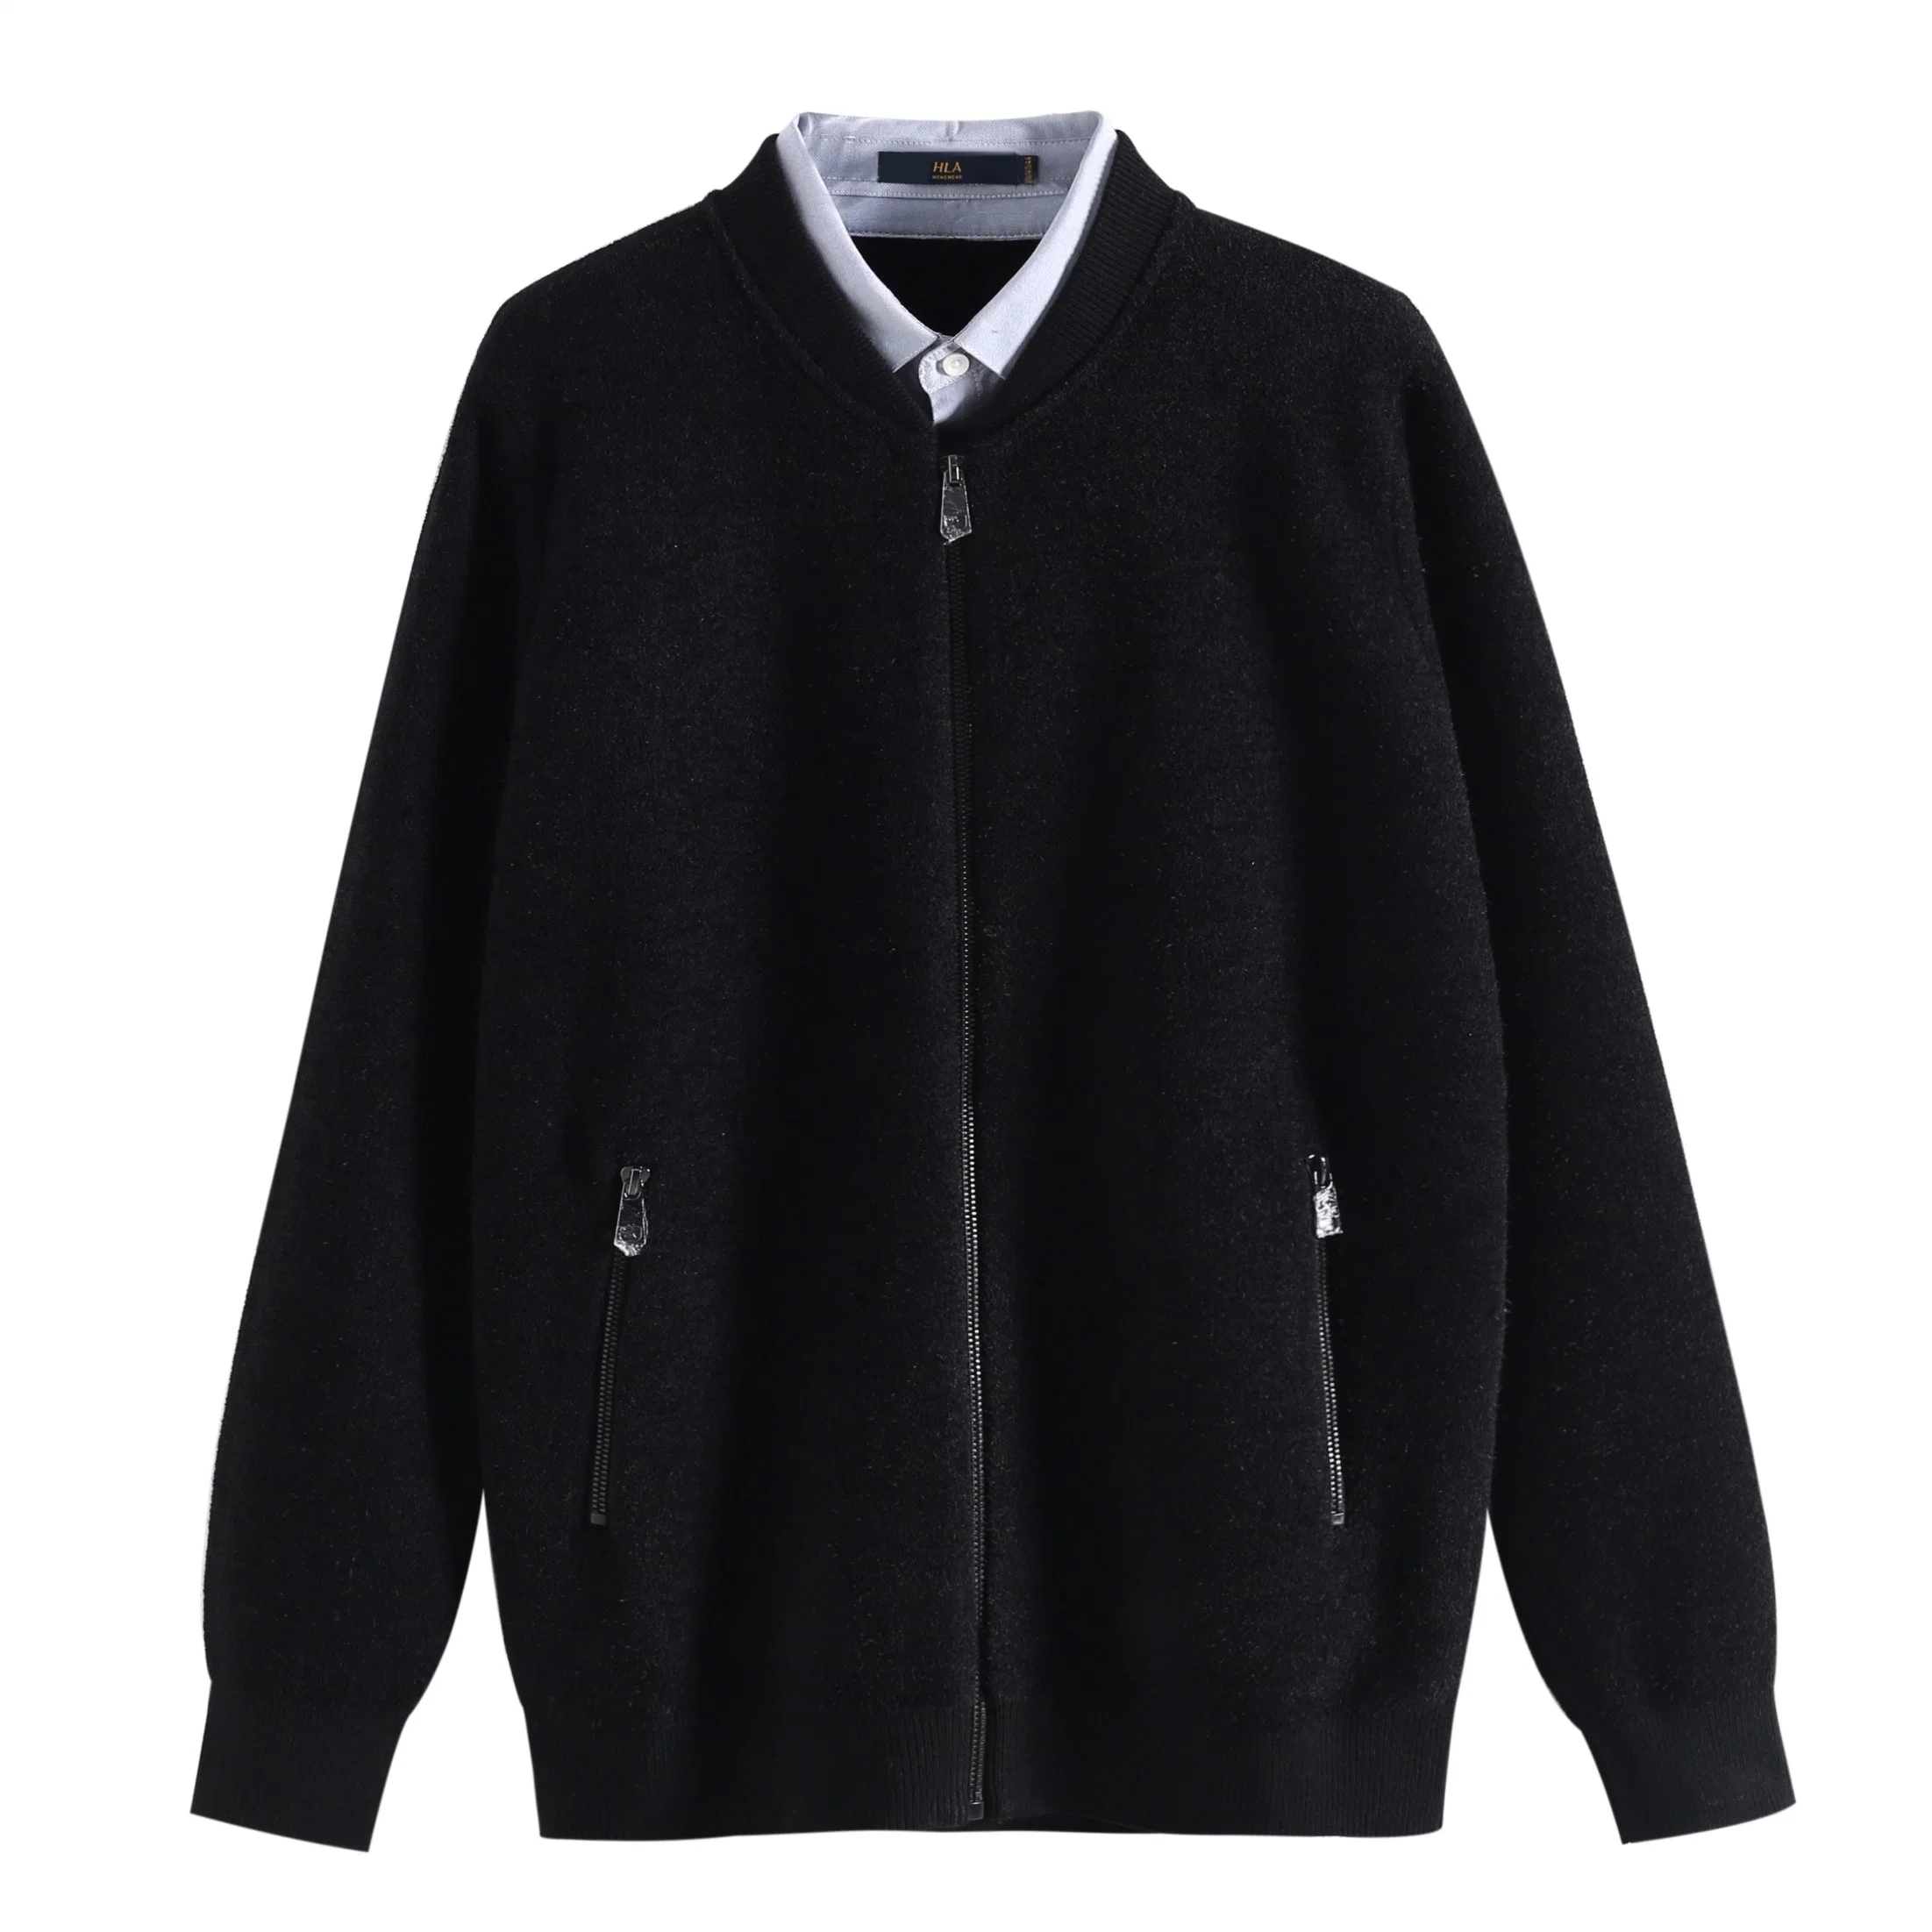 Hiver/automne avec Fake Two Woven Collar Sweater Nouveau pour Homme Tricoté décontracté manteau épais pour Homme avec Zipper